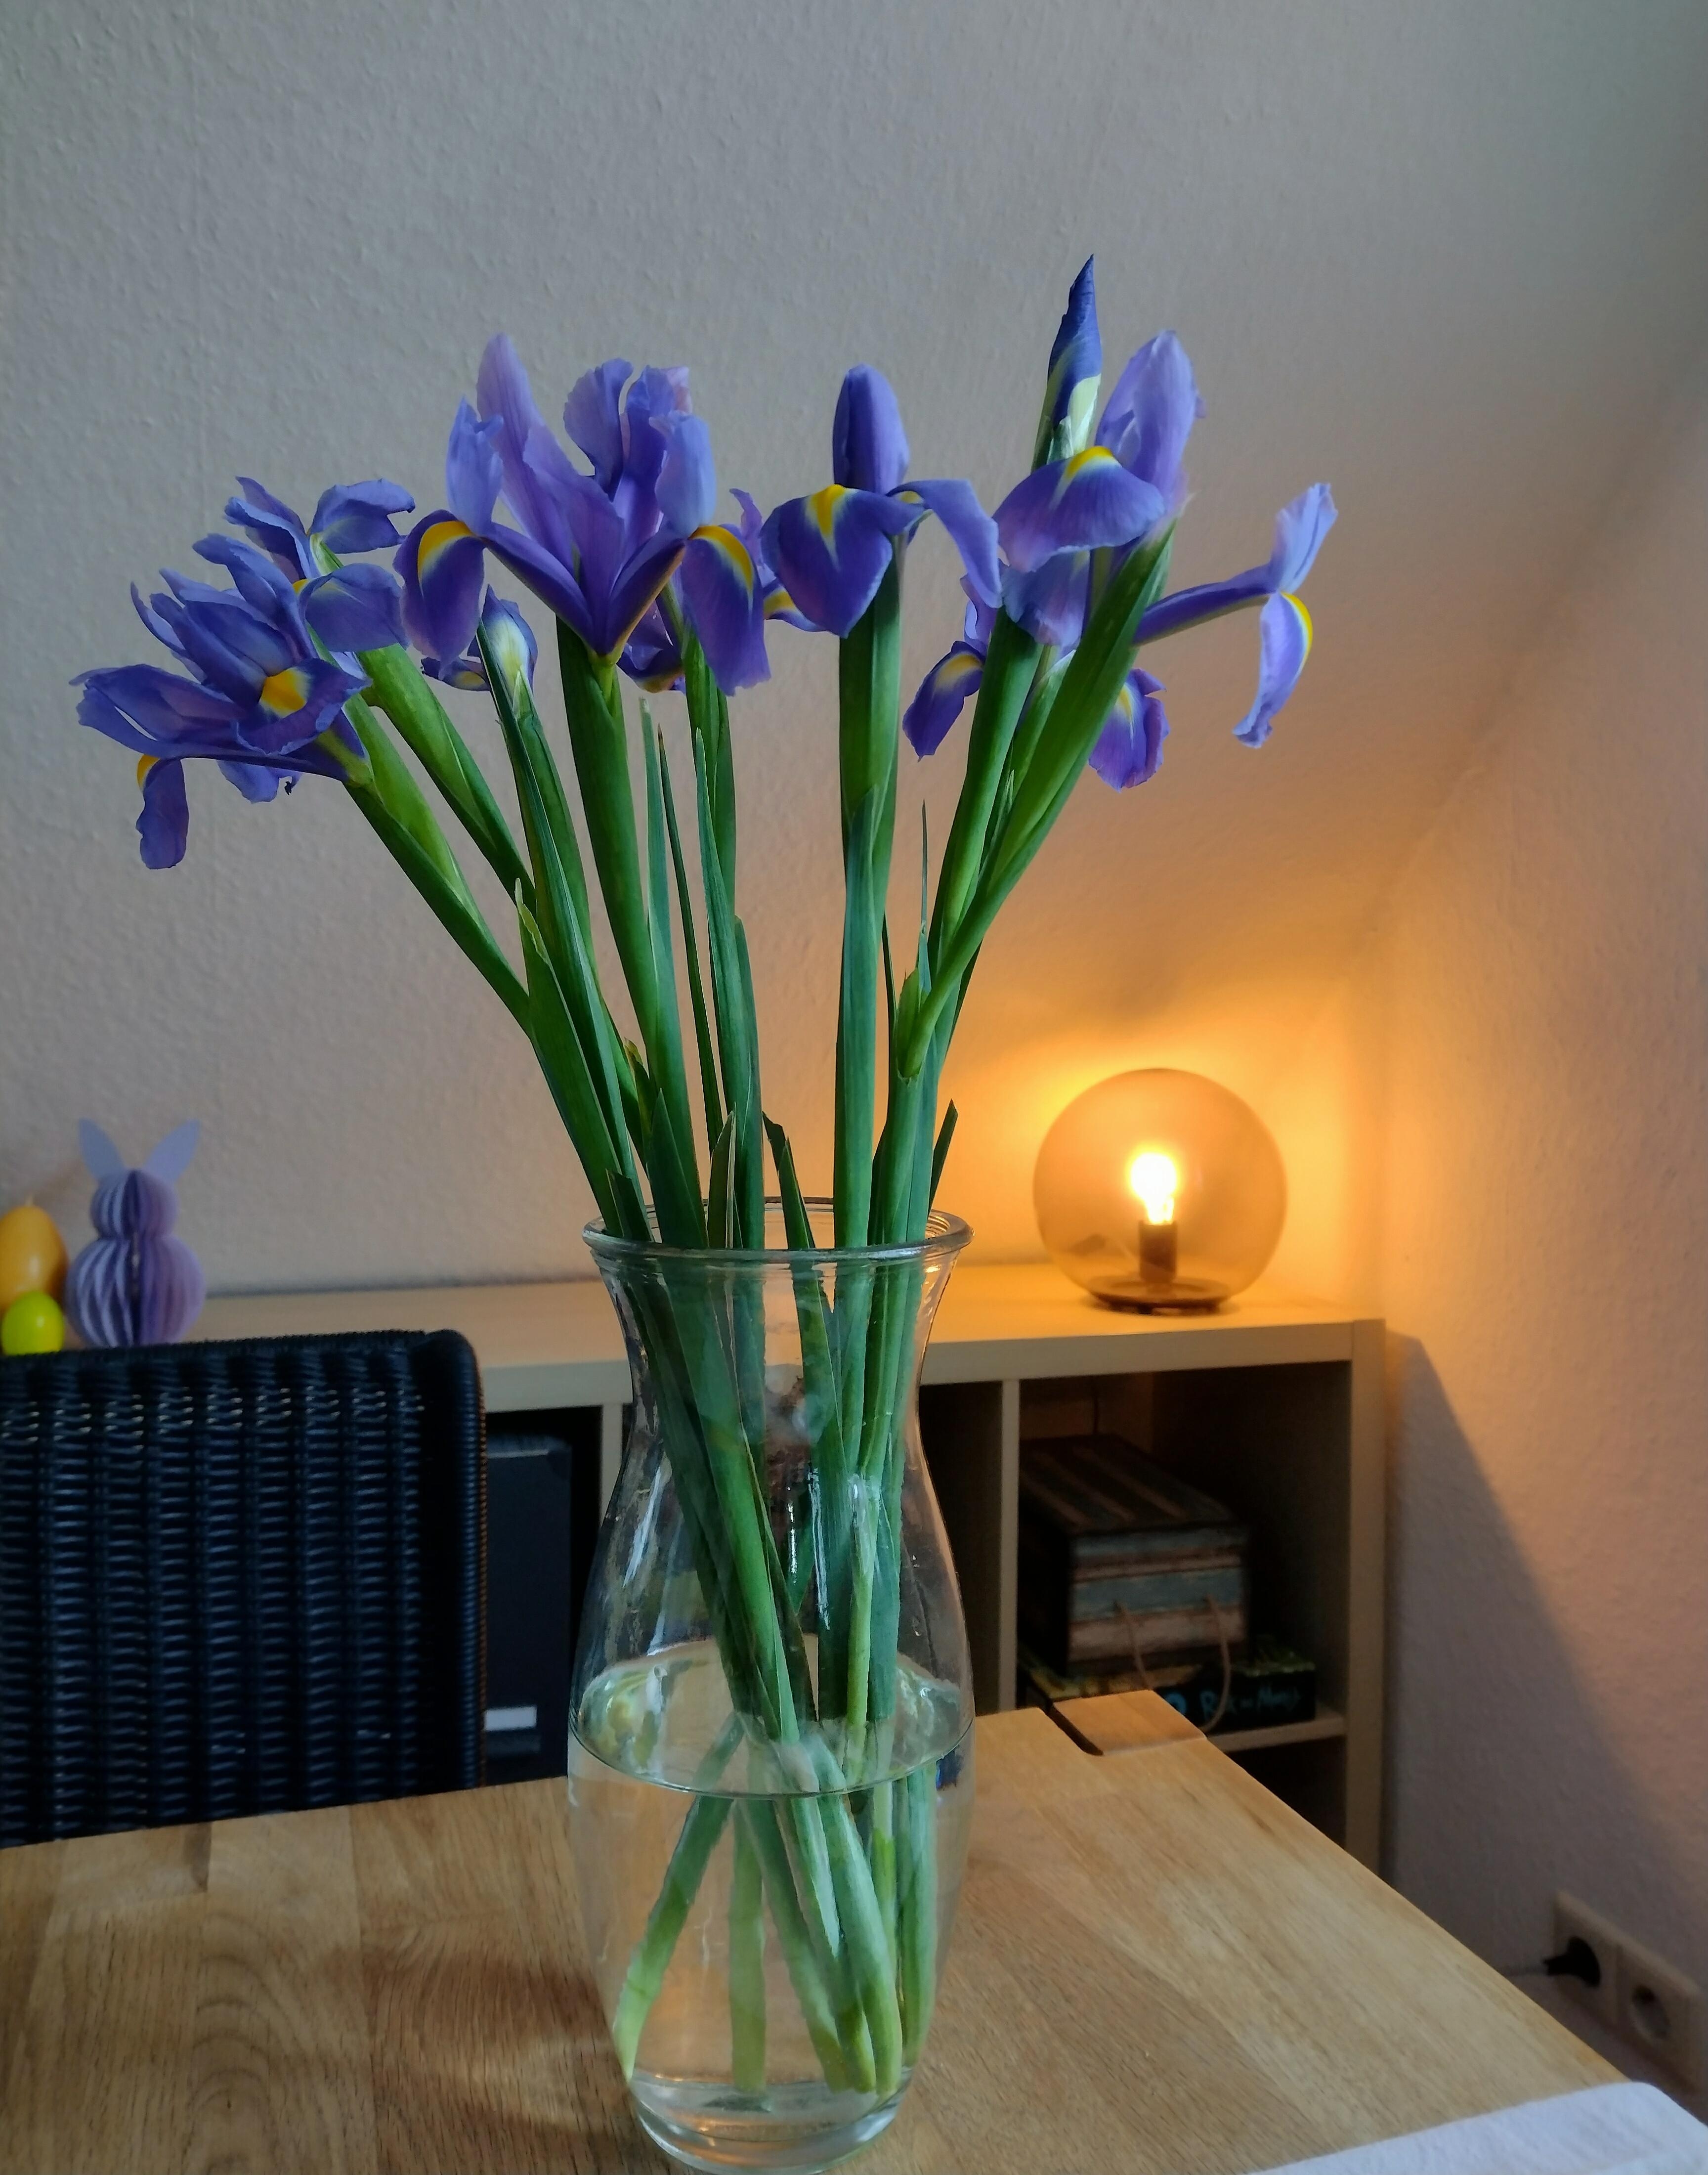 Irisliebe 🥰
#iris #frischeblumen #blumenliebe #kugellampe #schrägdach #abendlicht #glasvase #vasenmittwoch